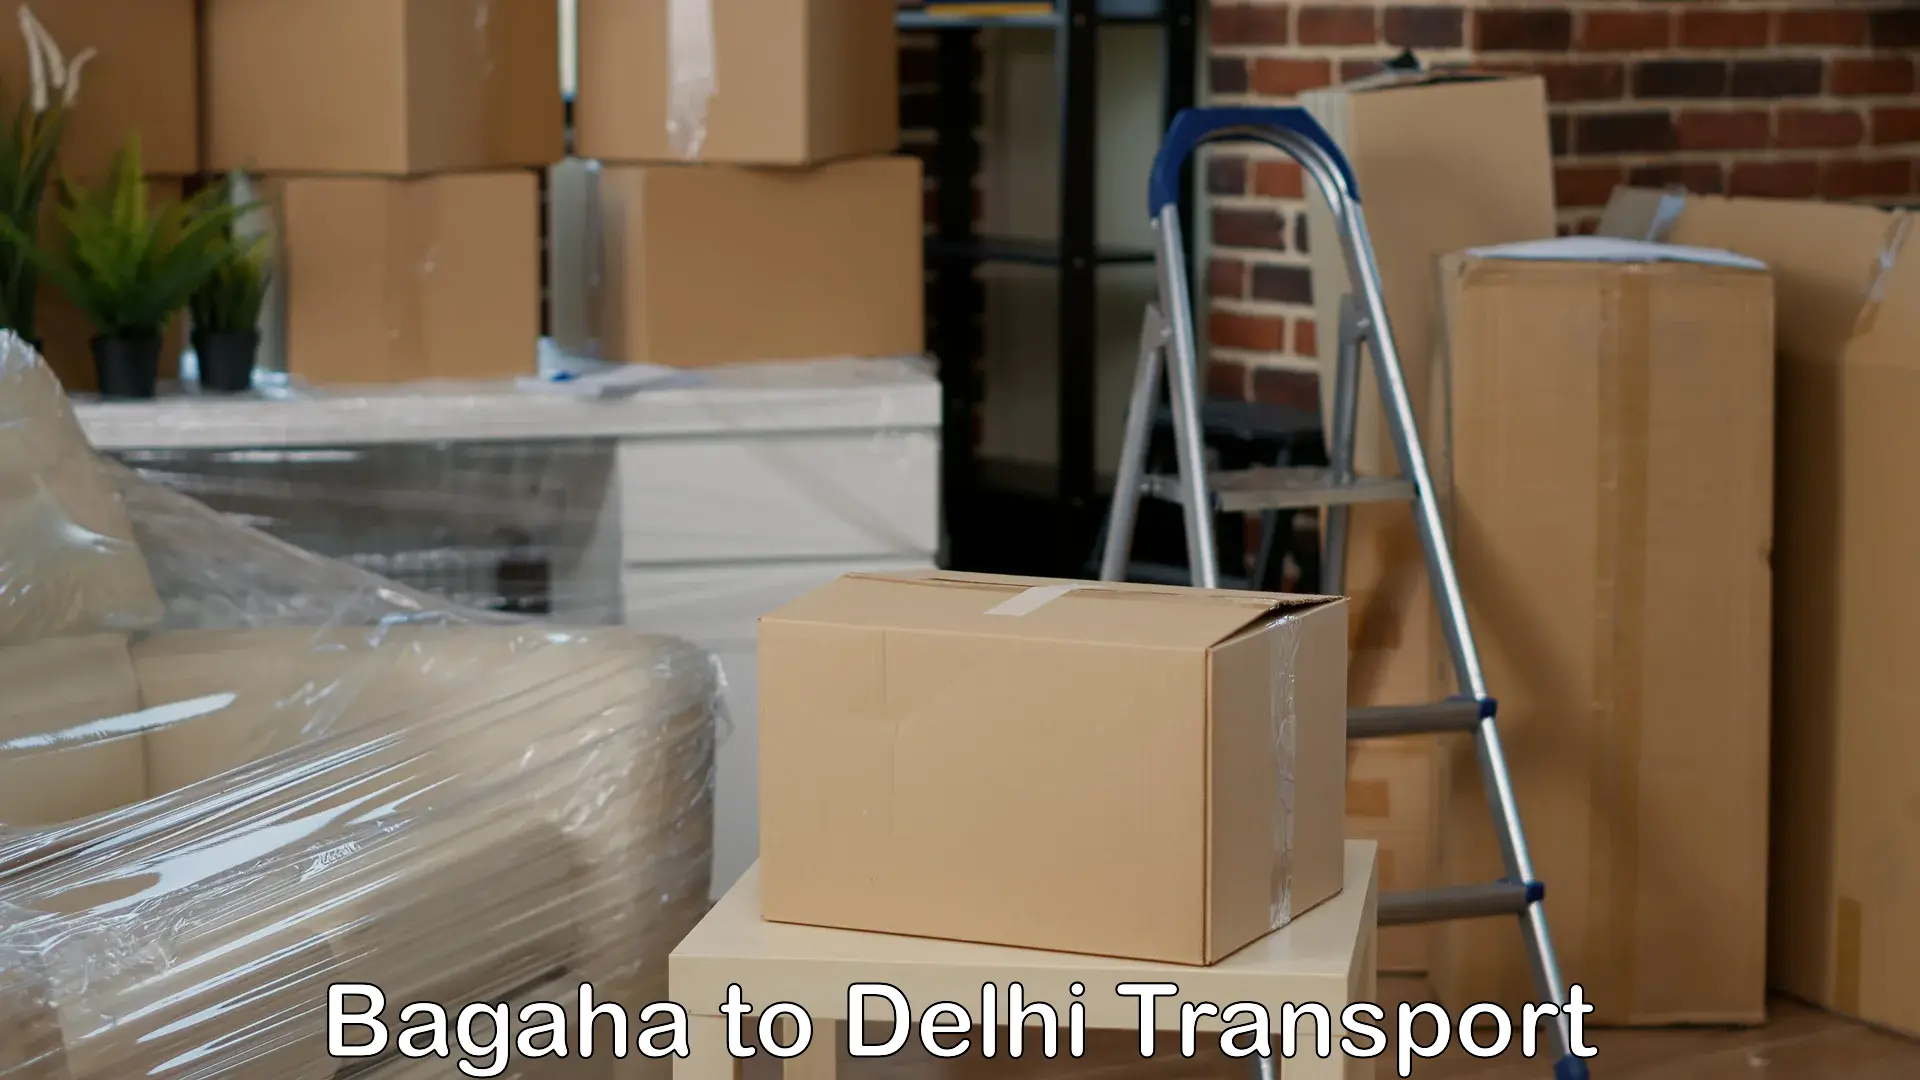 Domestic goods transportation services Bagaha to East Delhi